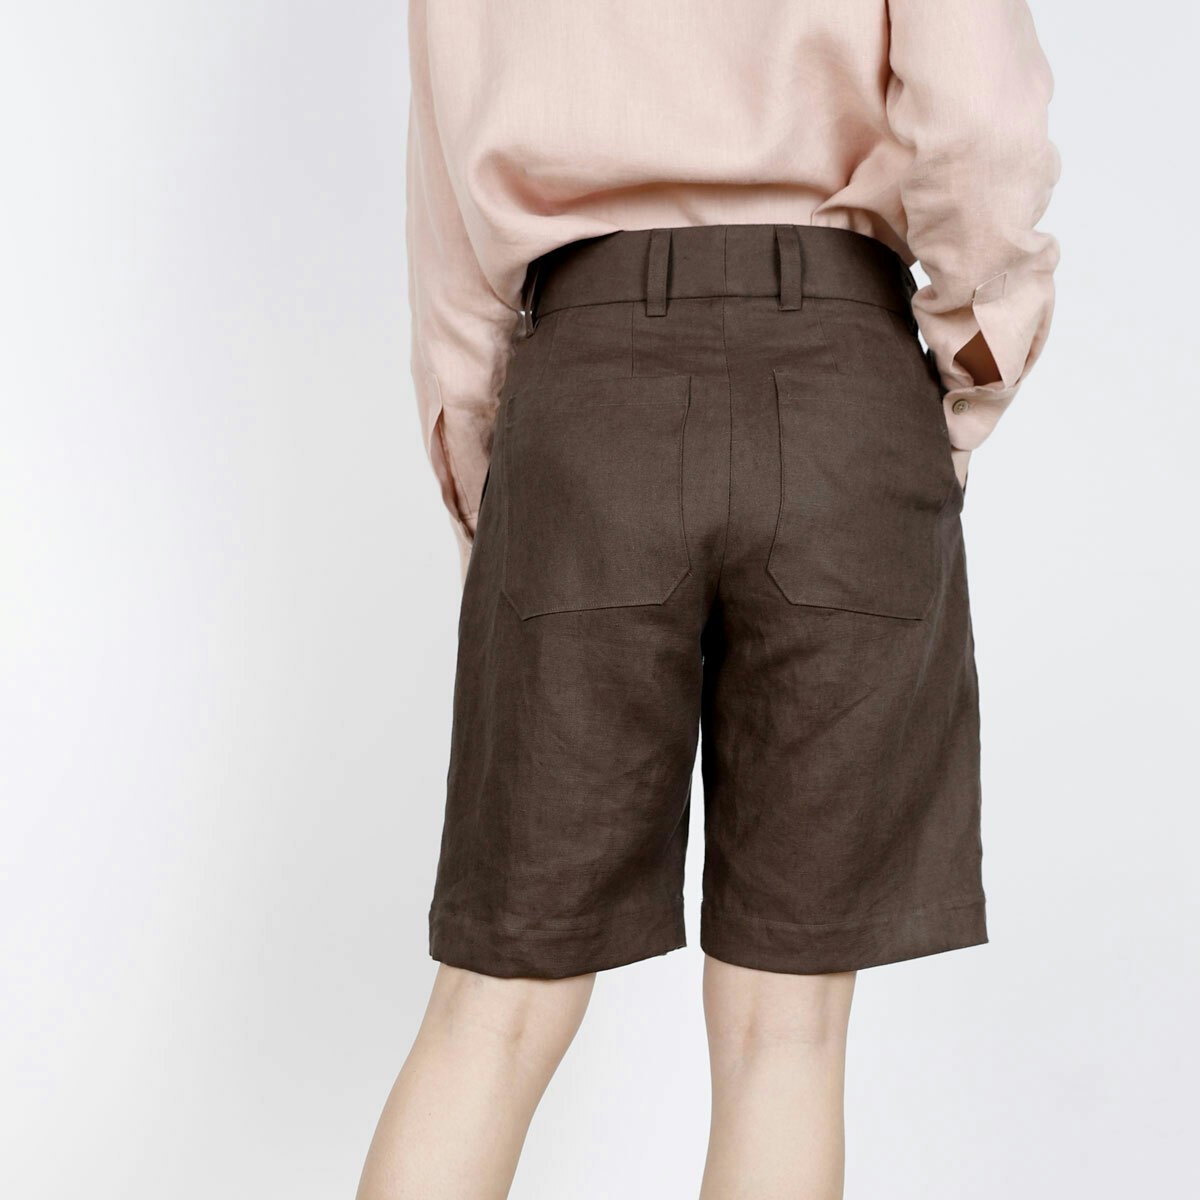 Cass shorts linen back stepsq